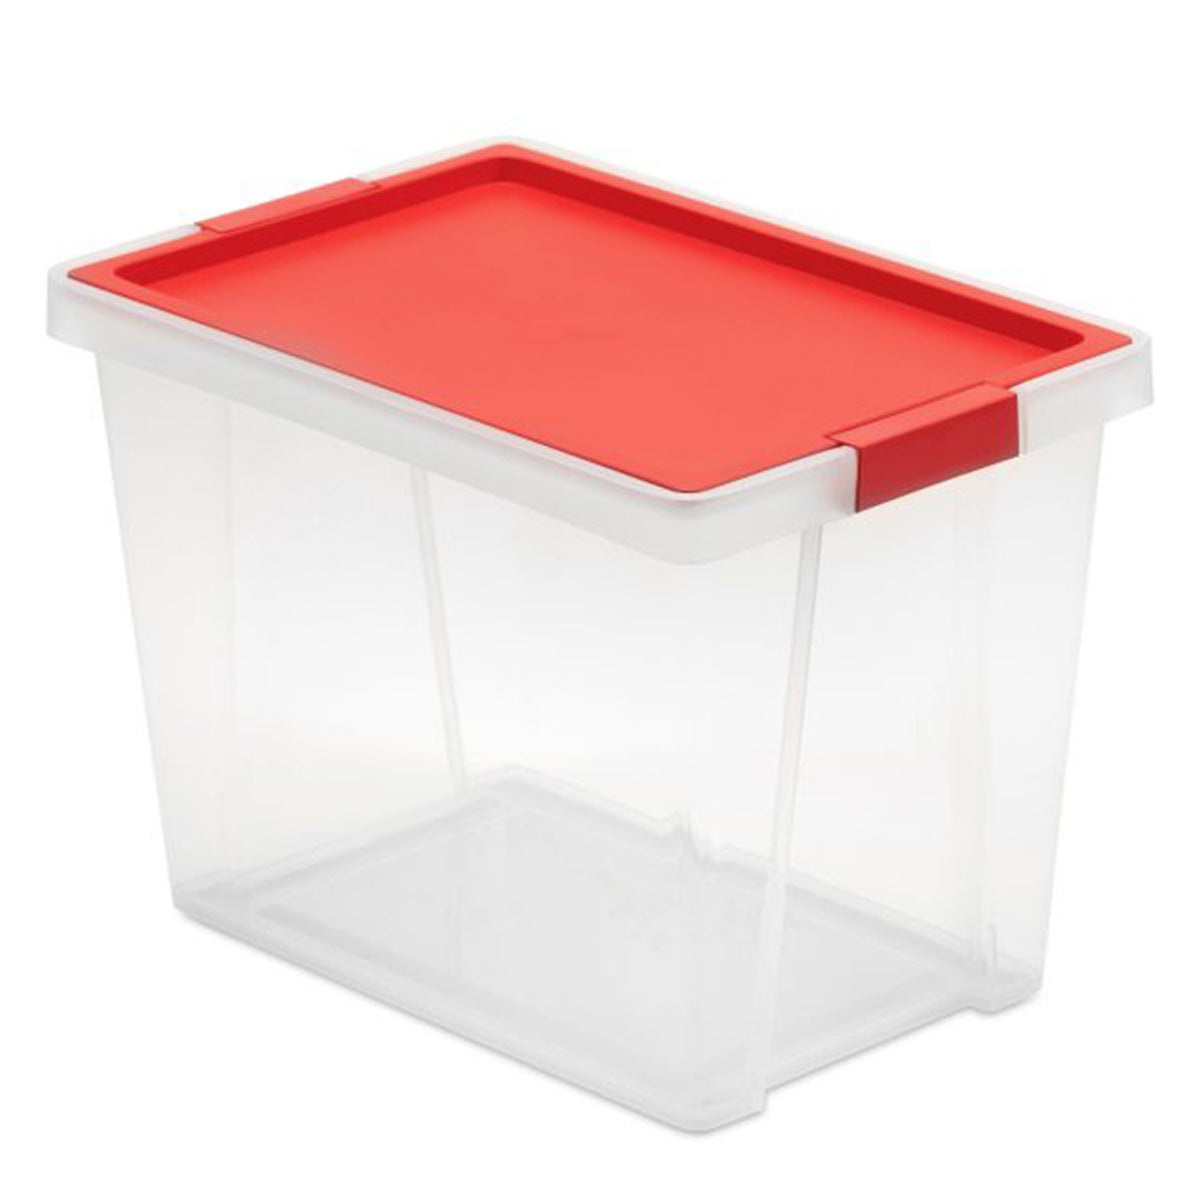 Storage box - Blue/red